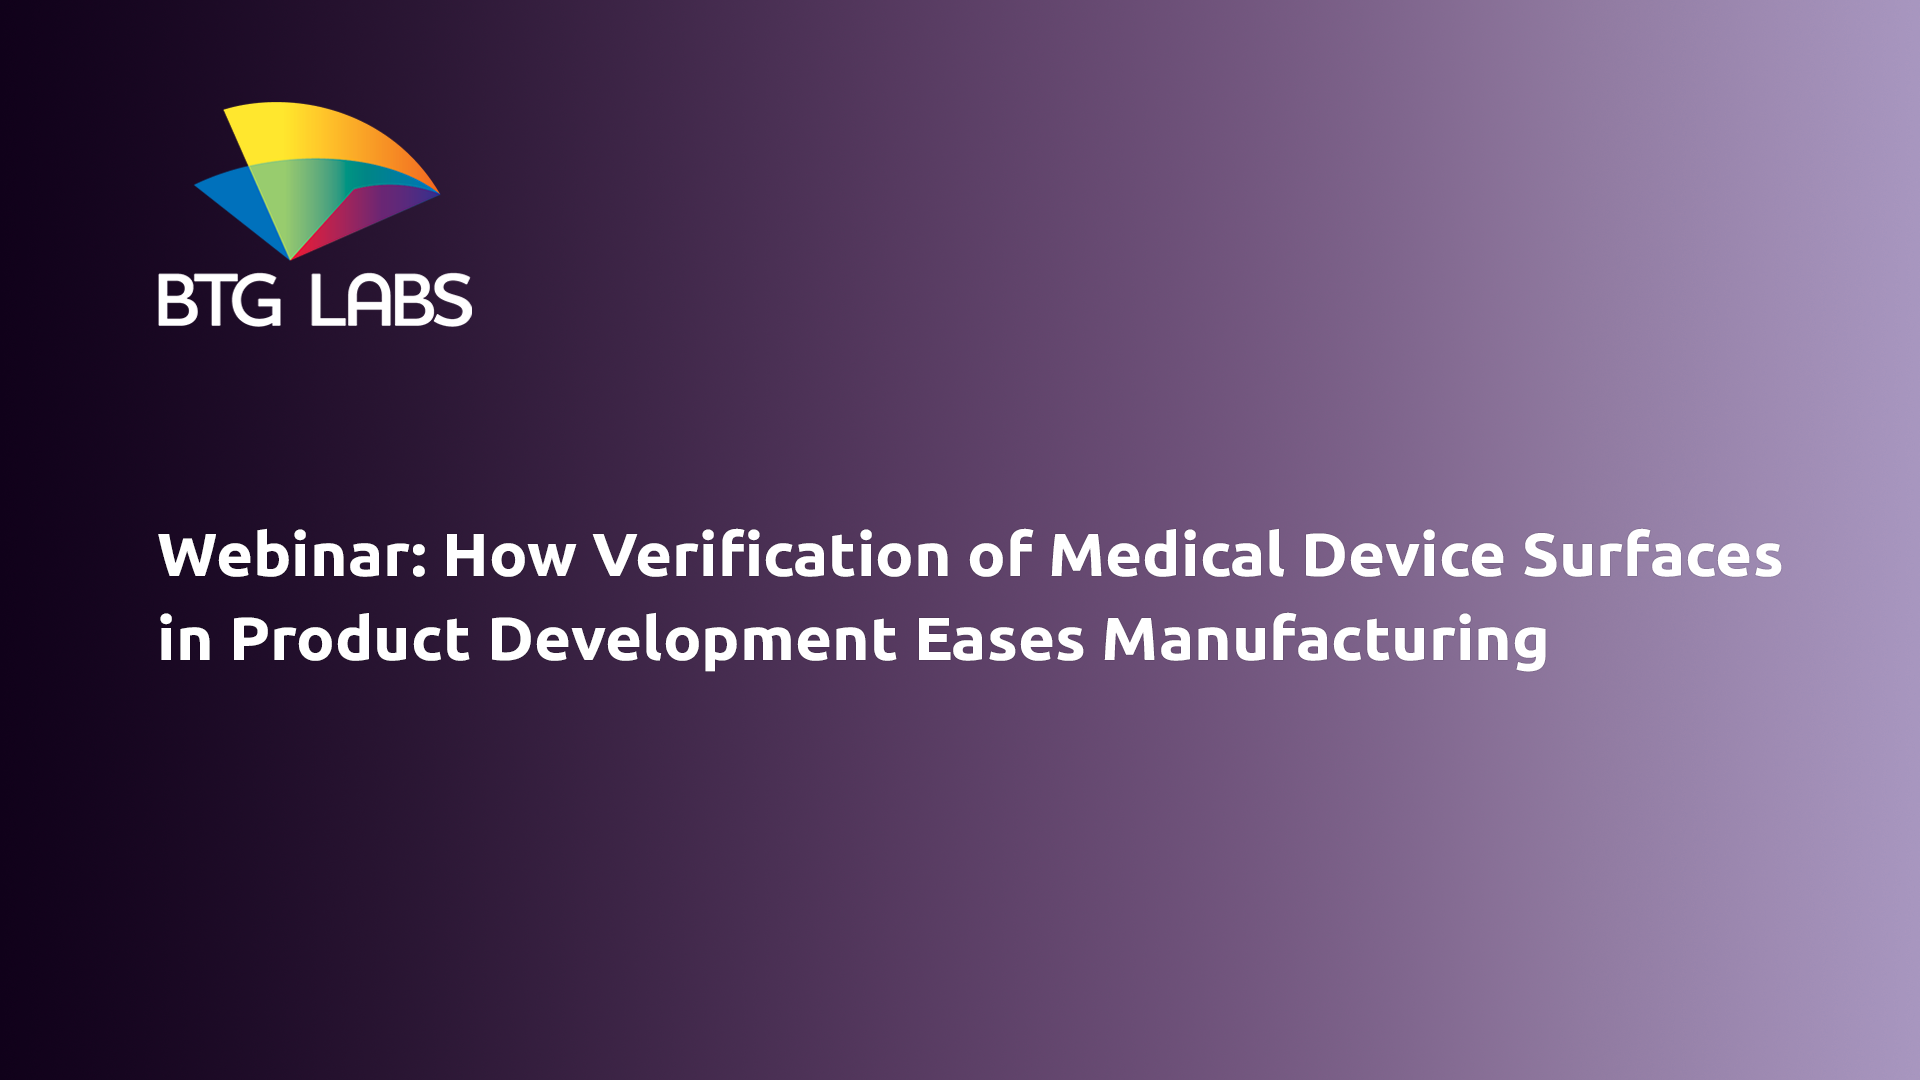 如何验证医疗设备 - 产品曲面 - 产品开发 - 简化 - 制造 - 网络研讨会